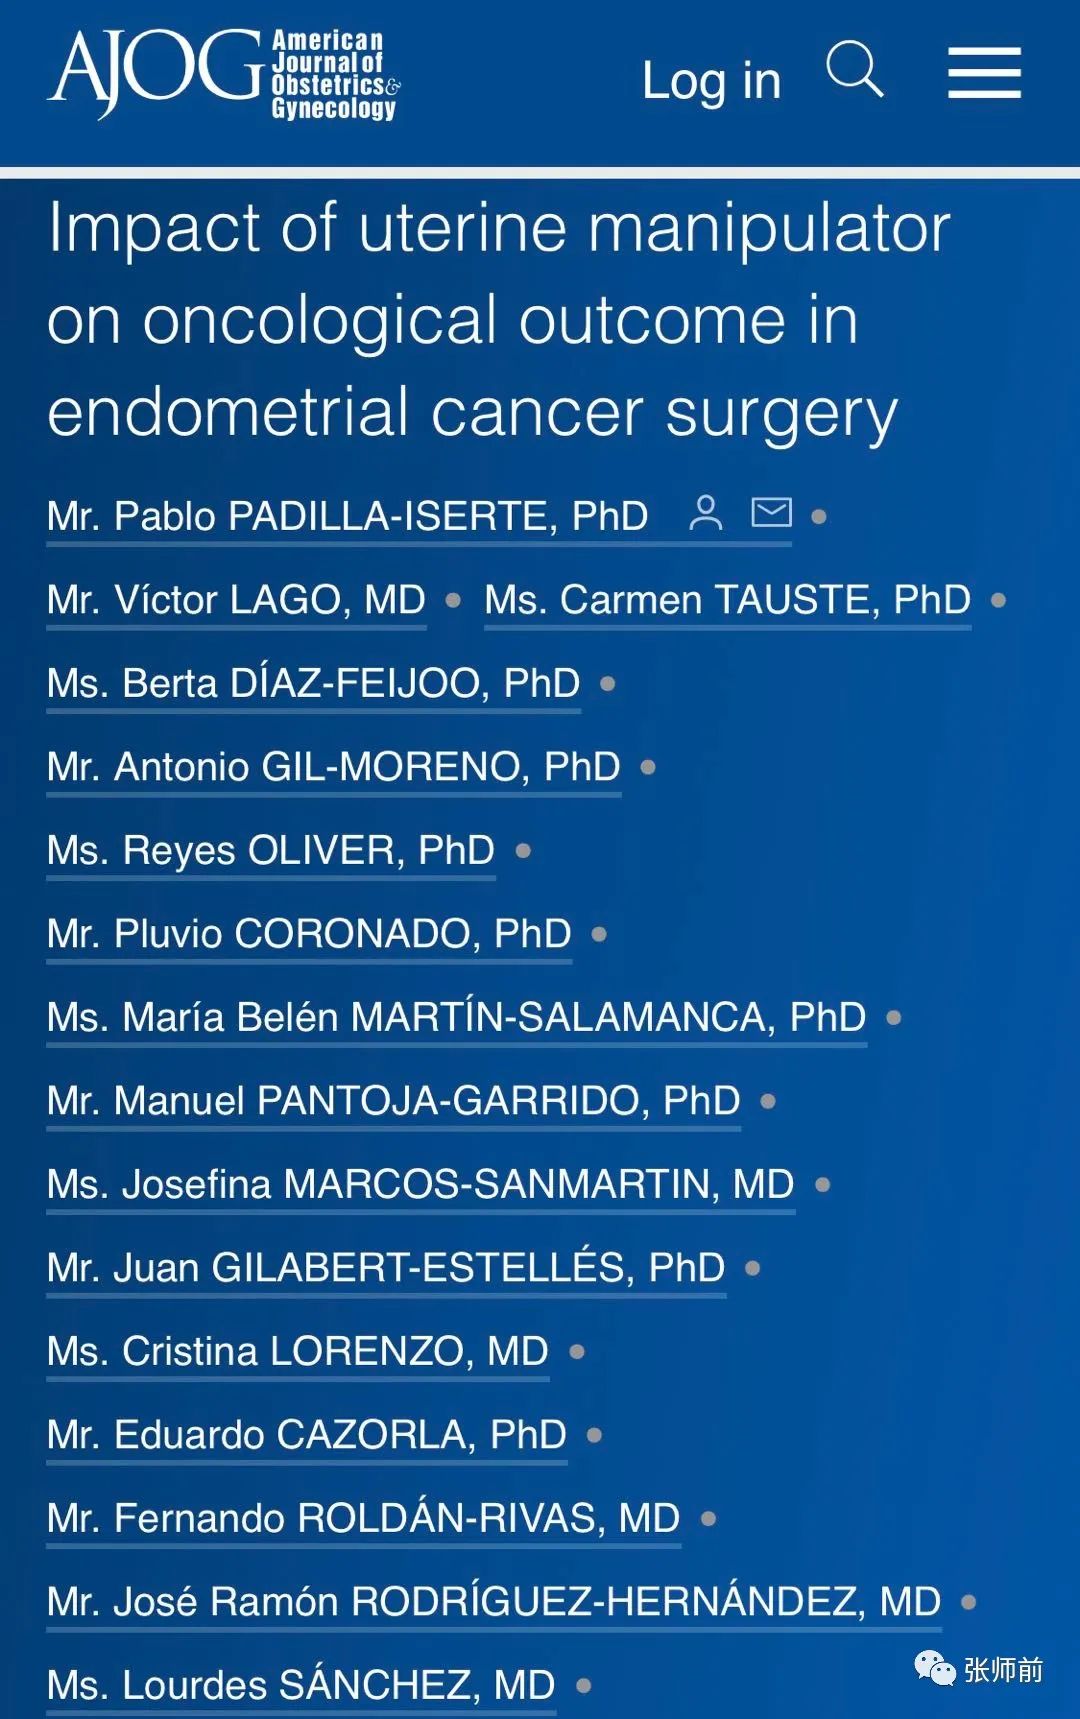 术中应用举宫器对<font color="red">子宫内</font>膜癌患者肿瘤预后的影响：一项来自西班牙15个妇科肿瘤中心回顾性研究报告